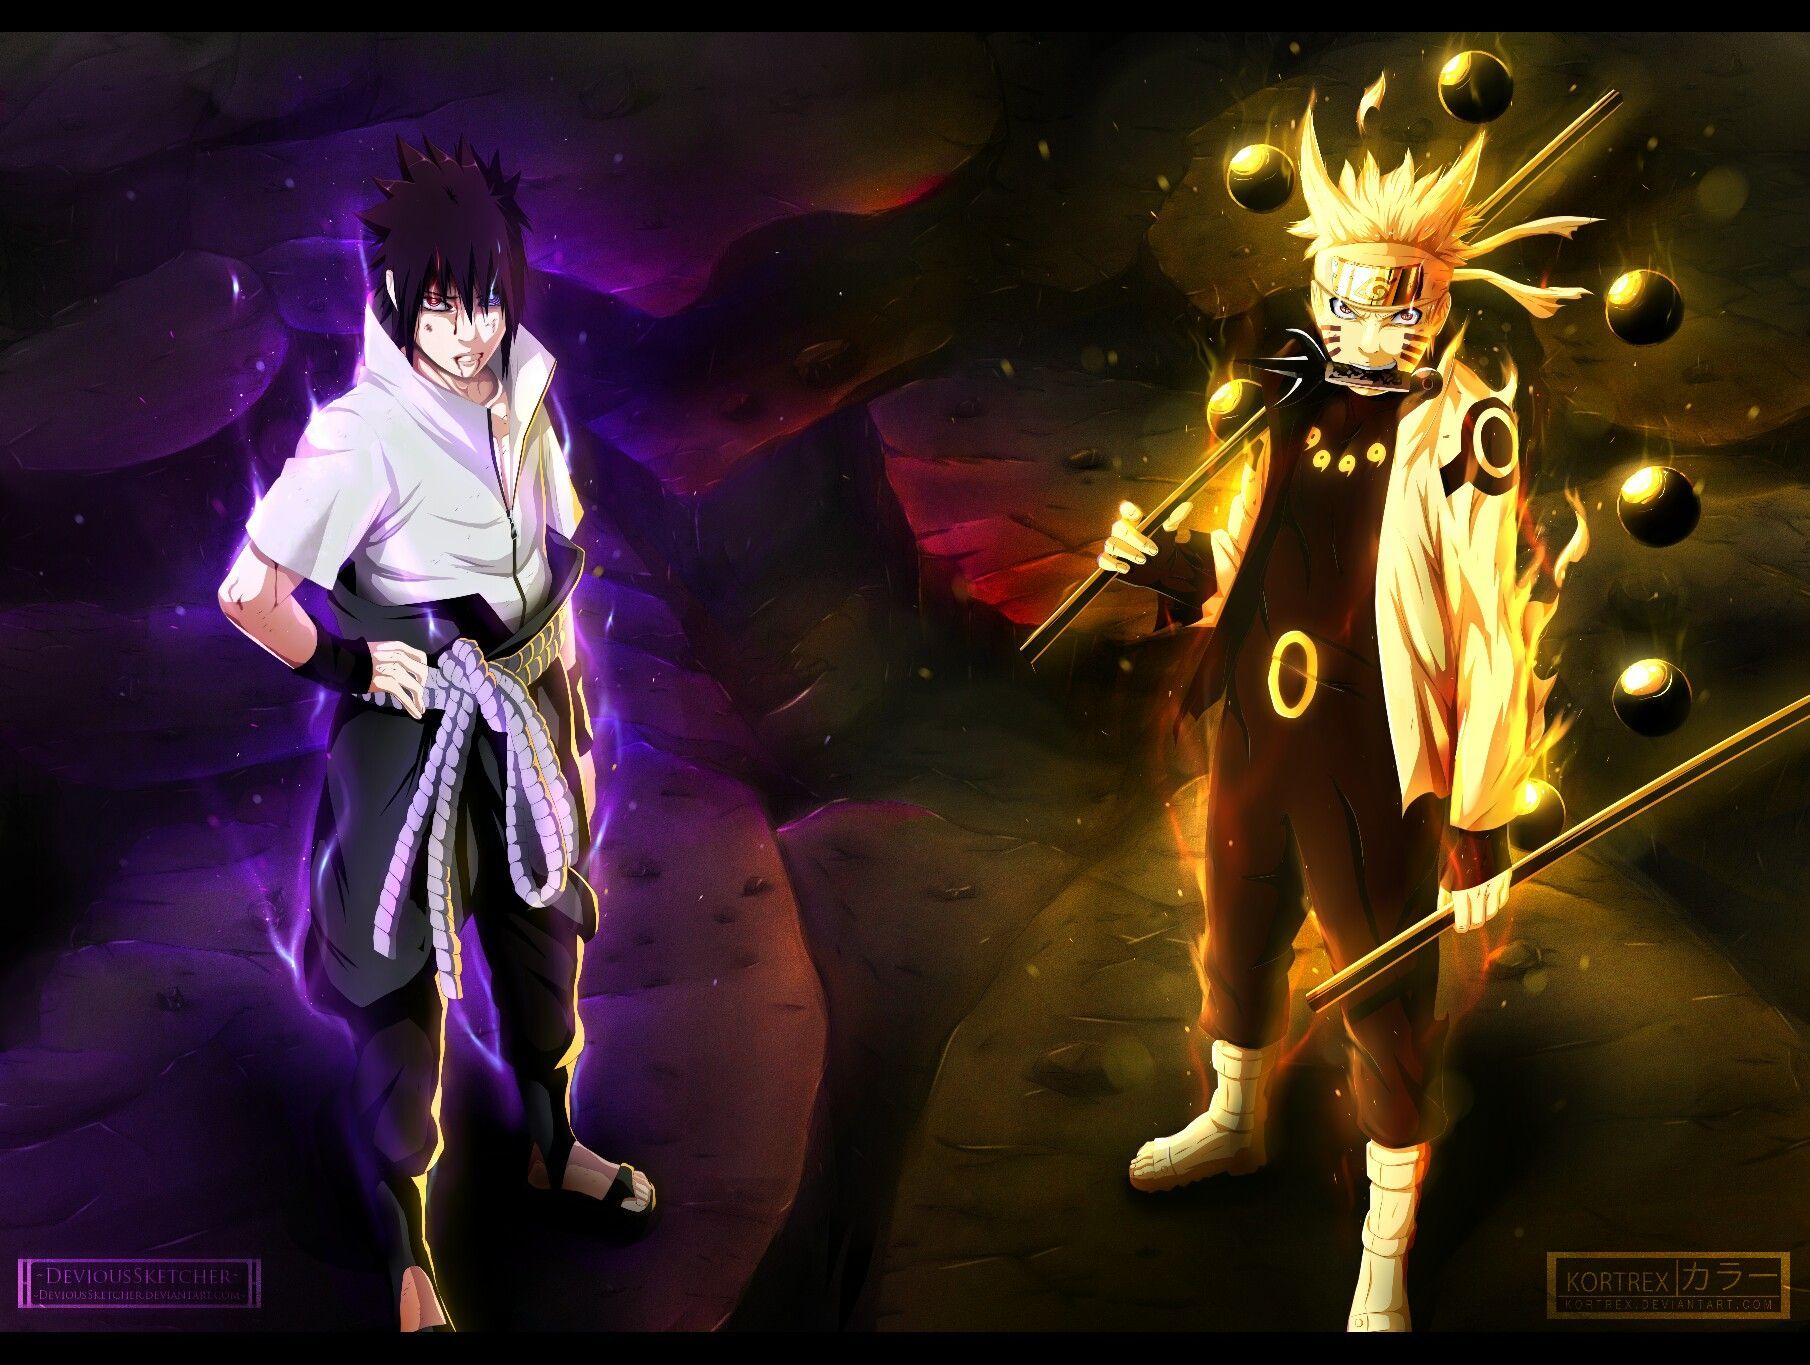 Fondos de pantalla de Naruto y Sasuke - FondosMil